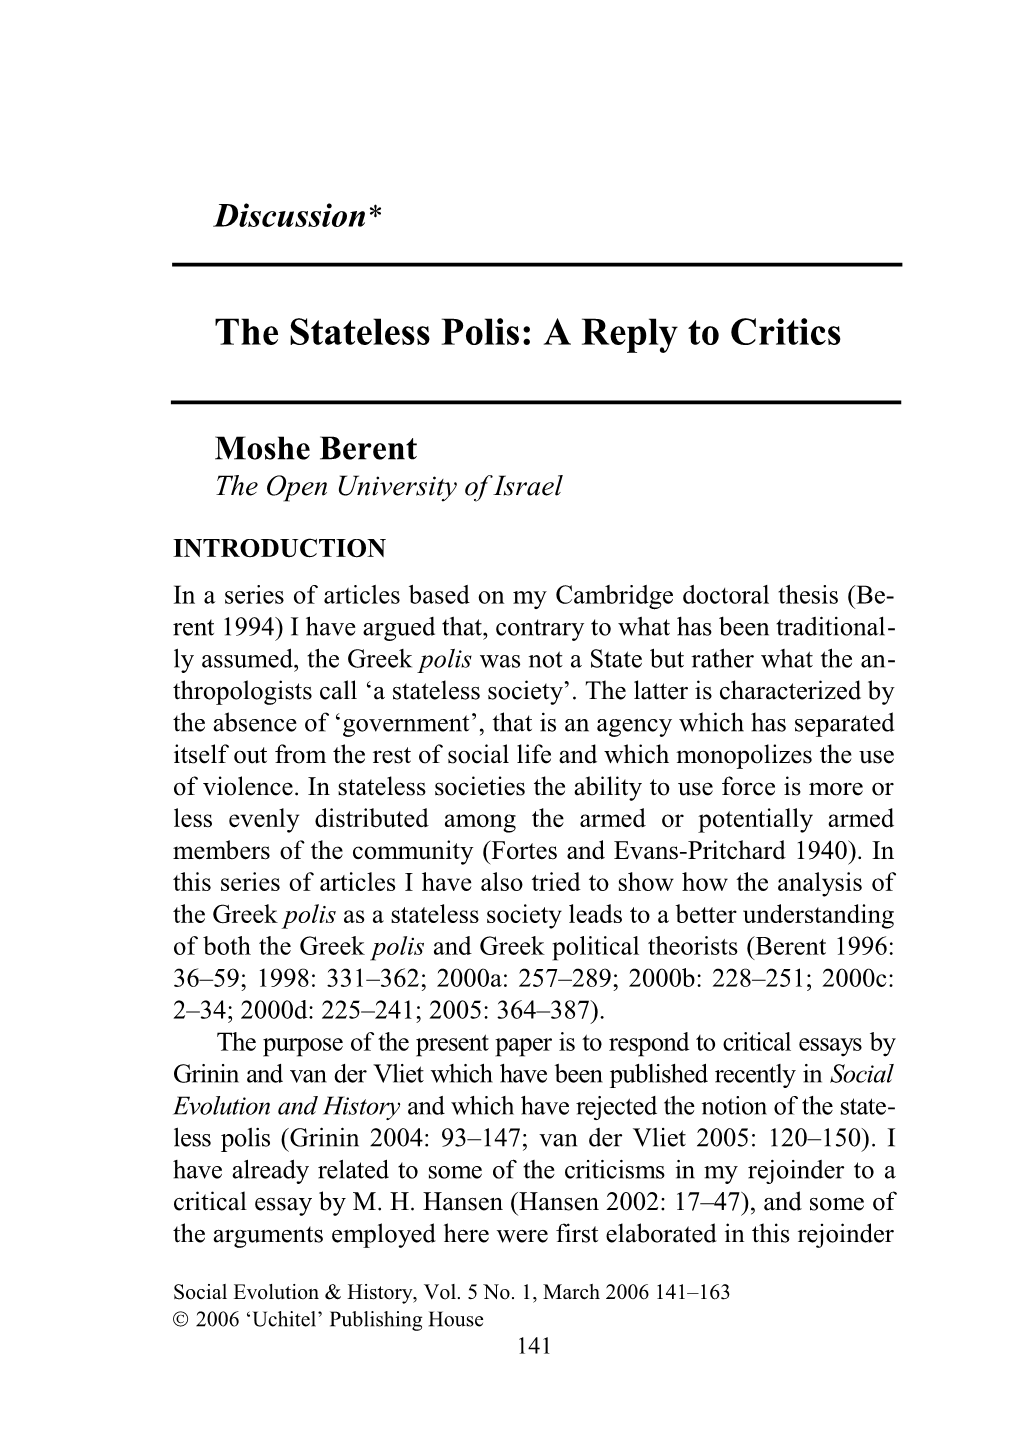 The Stateless Polis: a Reply to Critics